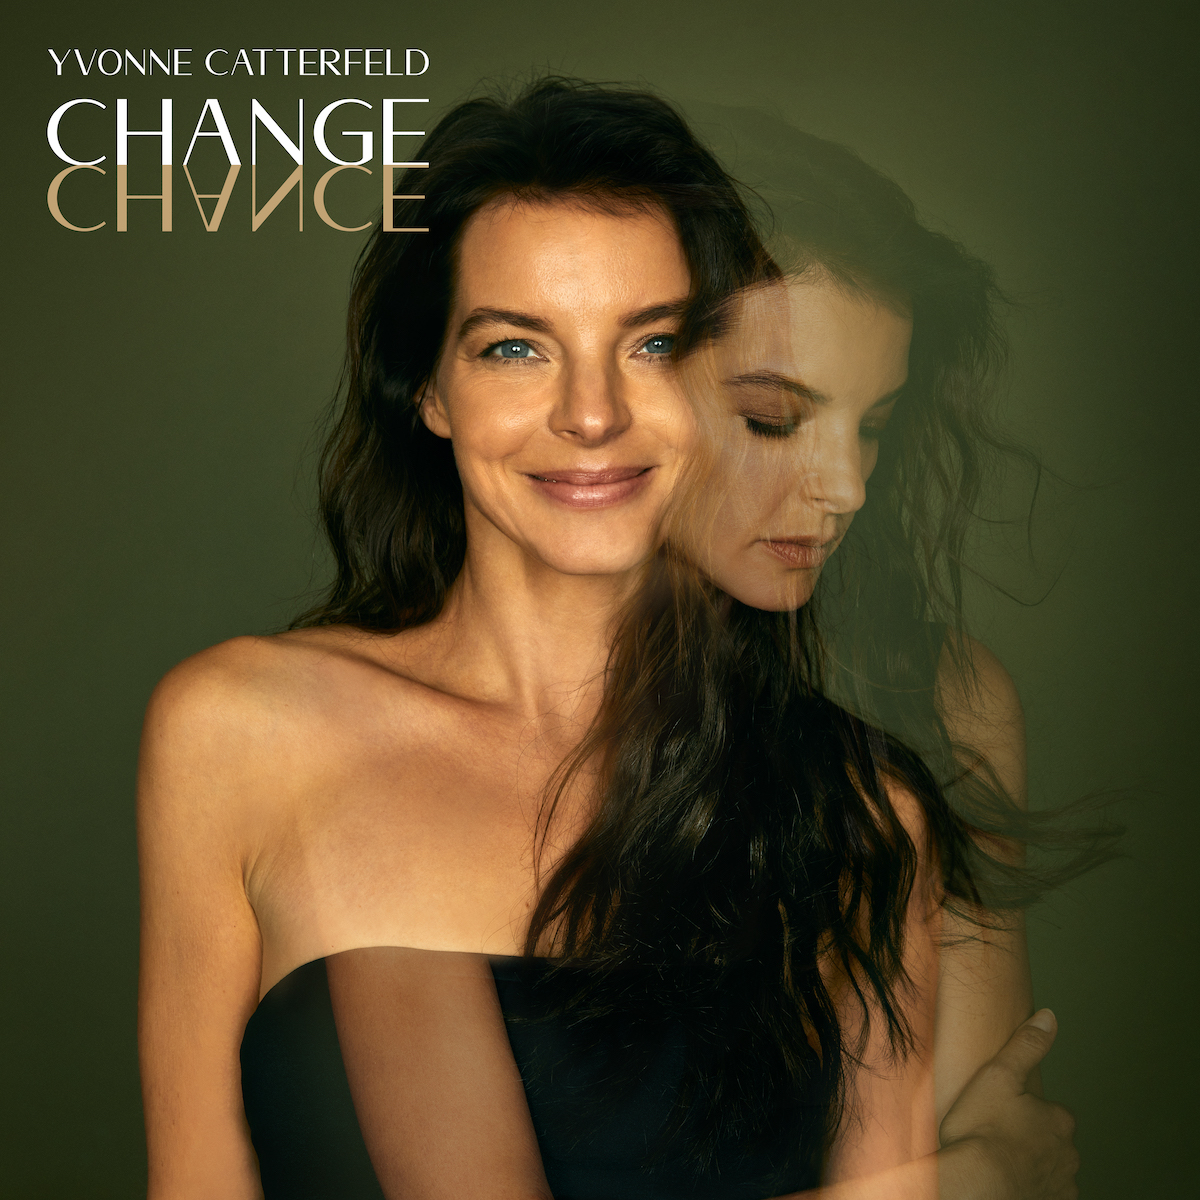 Das Albumcover "Change" von Yvonne Catterfeld zeigt die Sängerin lächelnd und in einem schulterfreien, schwarzen Oberteil vor einer grünen Wand. Darüber ist ein leicht durchscheinendes Bild von Catterfeld, wie sie die Arme verschränkt hat und nach unten blickt.